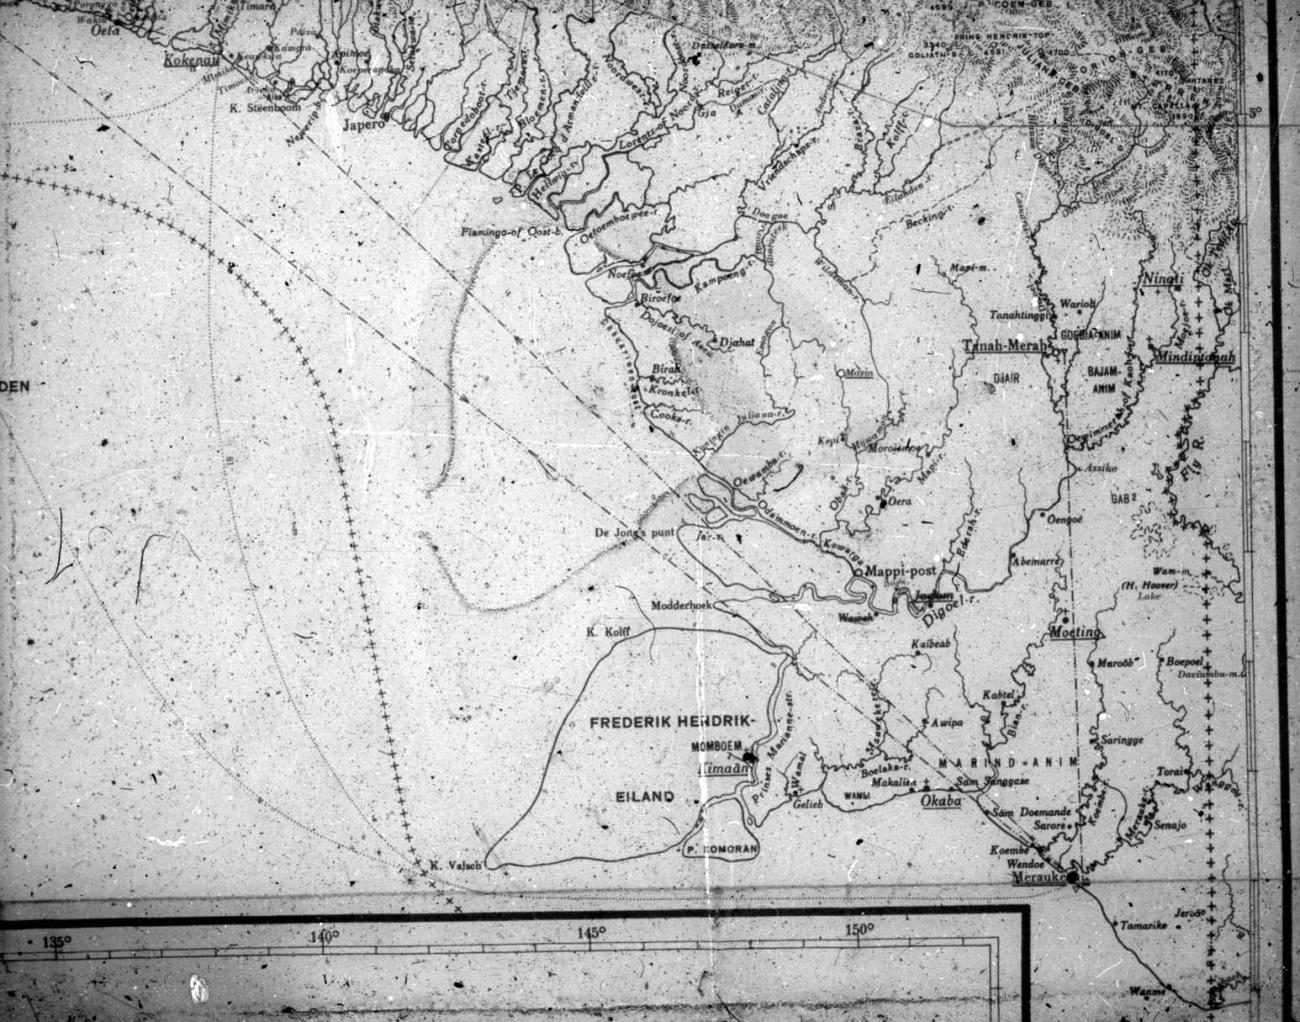 BD/66/181 - 
Kaart van  zuid Nieuw-Guinea
